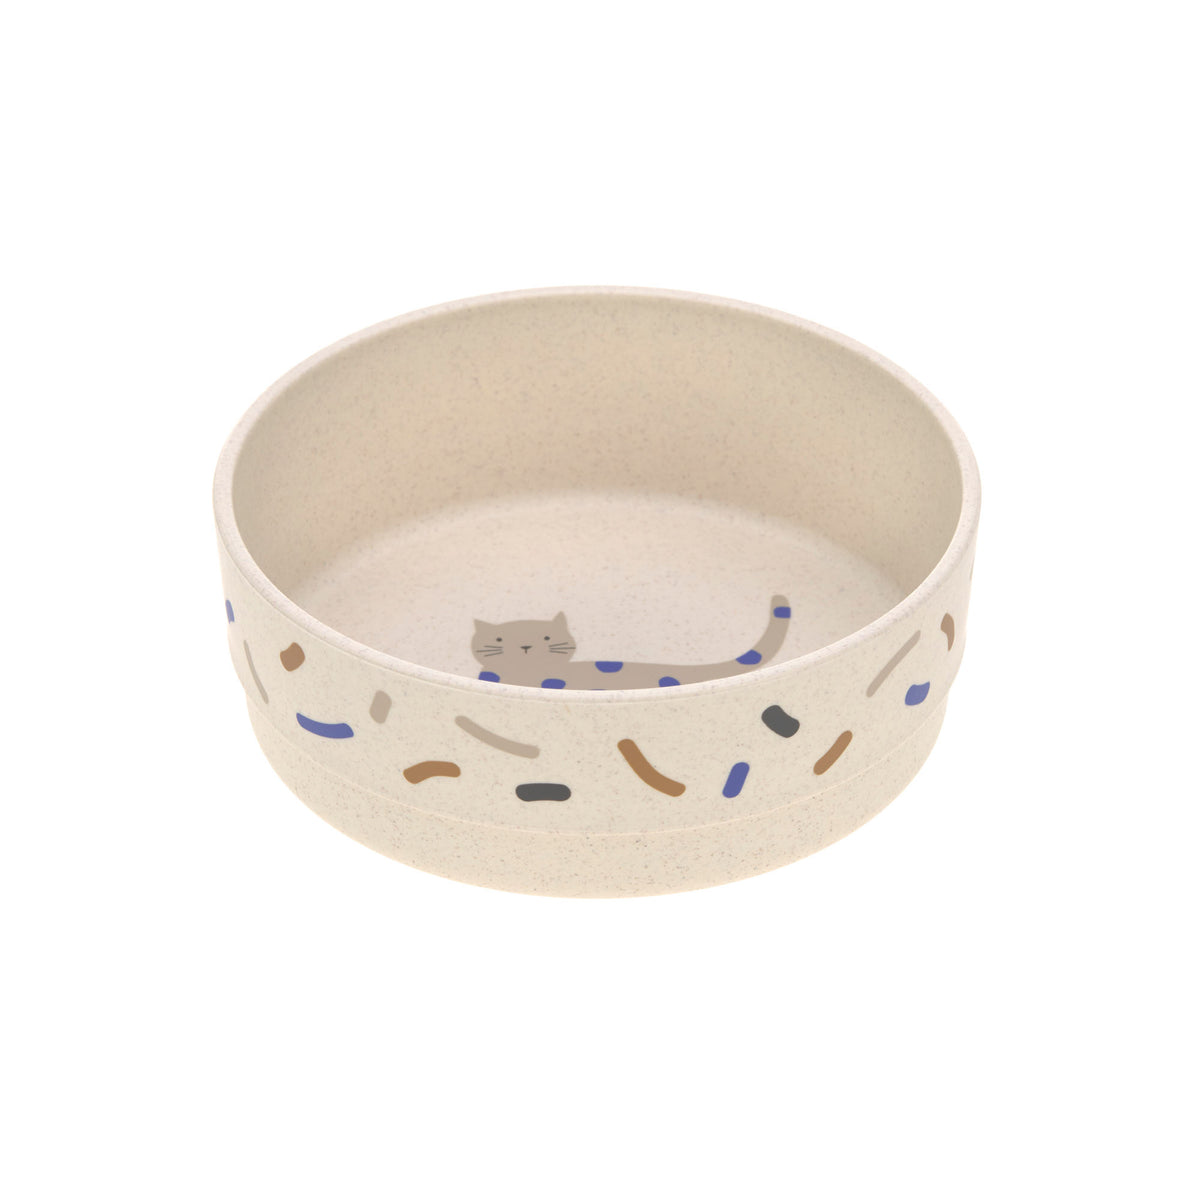 Lässig Bowl Porcelain/Silicone Little Mateys Royal Blue